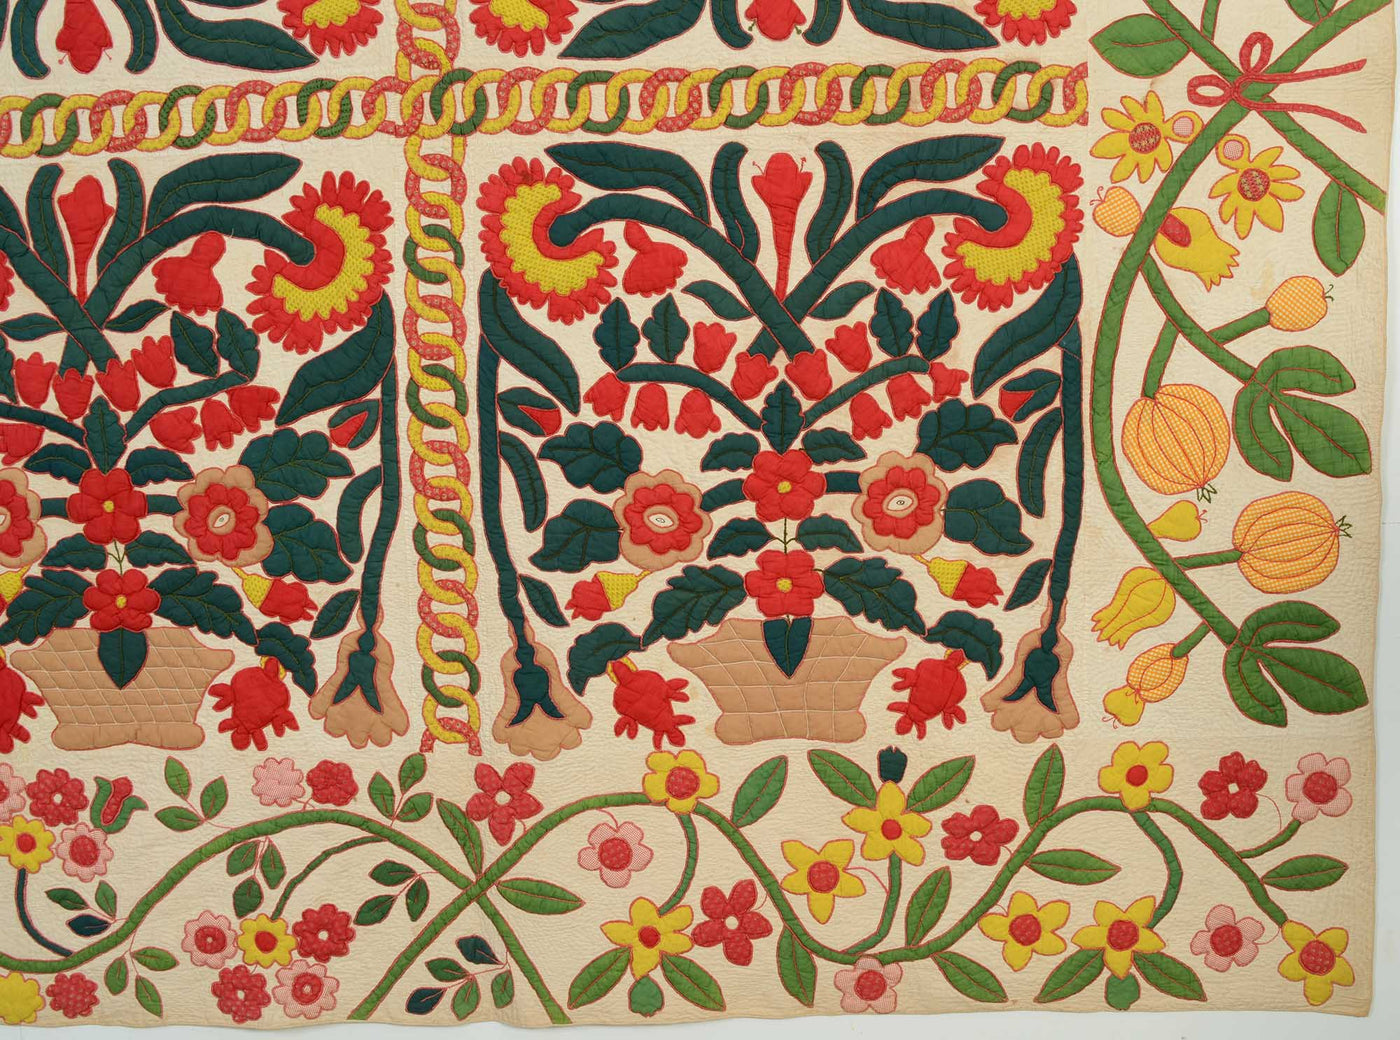 pots-of-flowers-stuffed-applique-quilt-1400548-detail-2